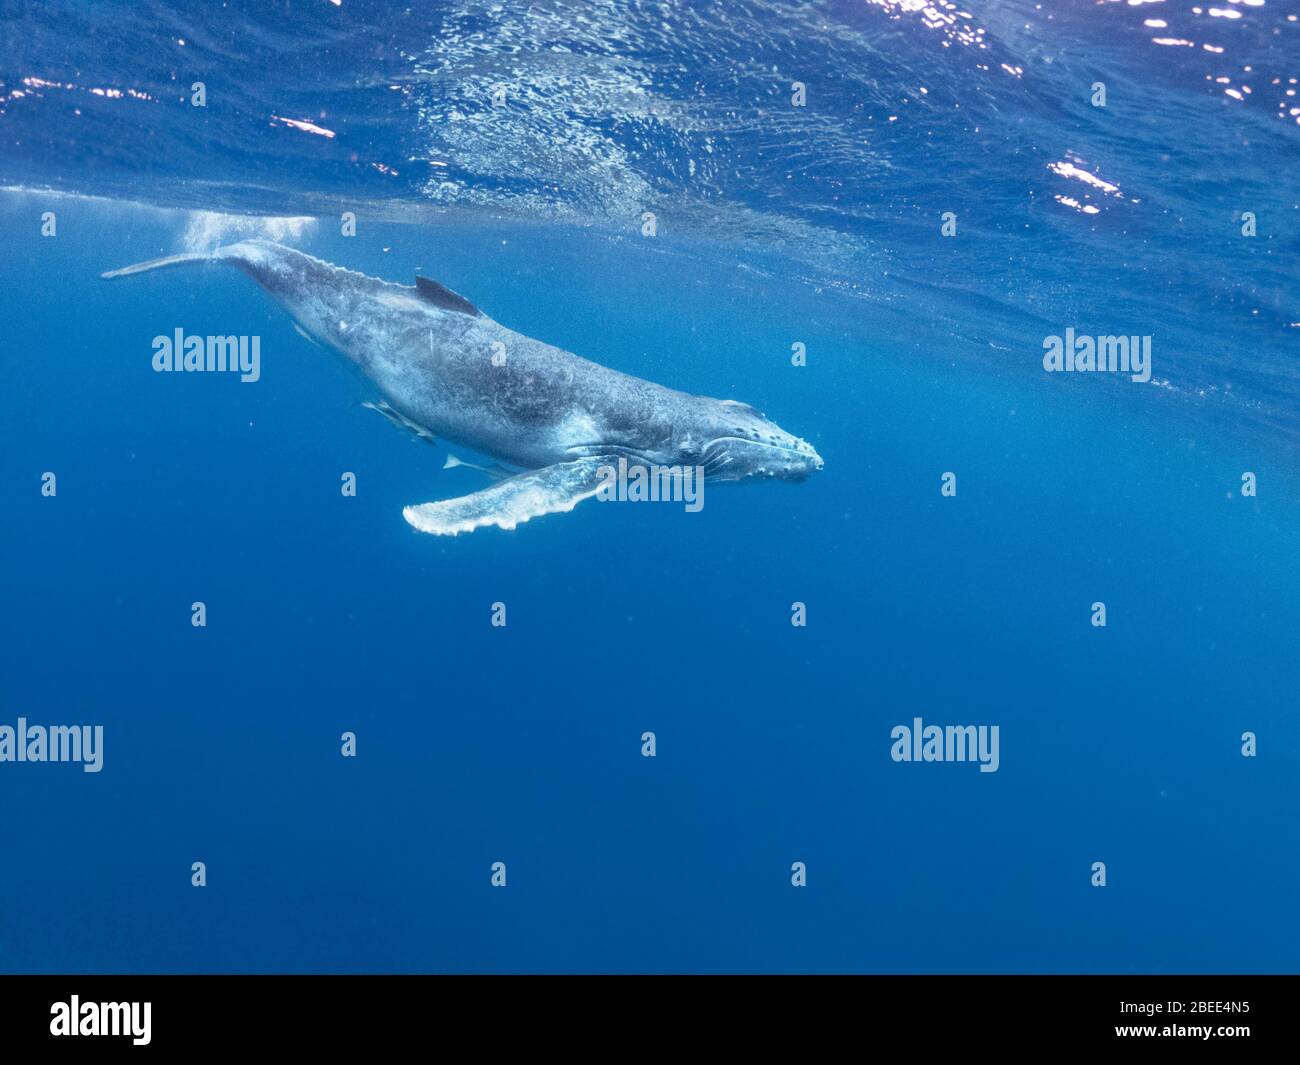 Une jeune baleine à bosse nageant sous la surface de l'océan Pacifique près des îles de Vava'u Tonga éclabousse Banque D'Images